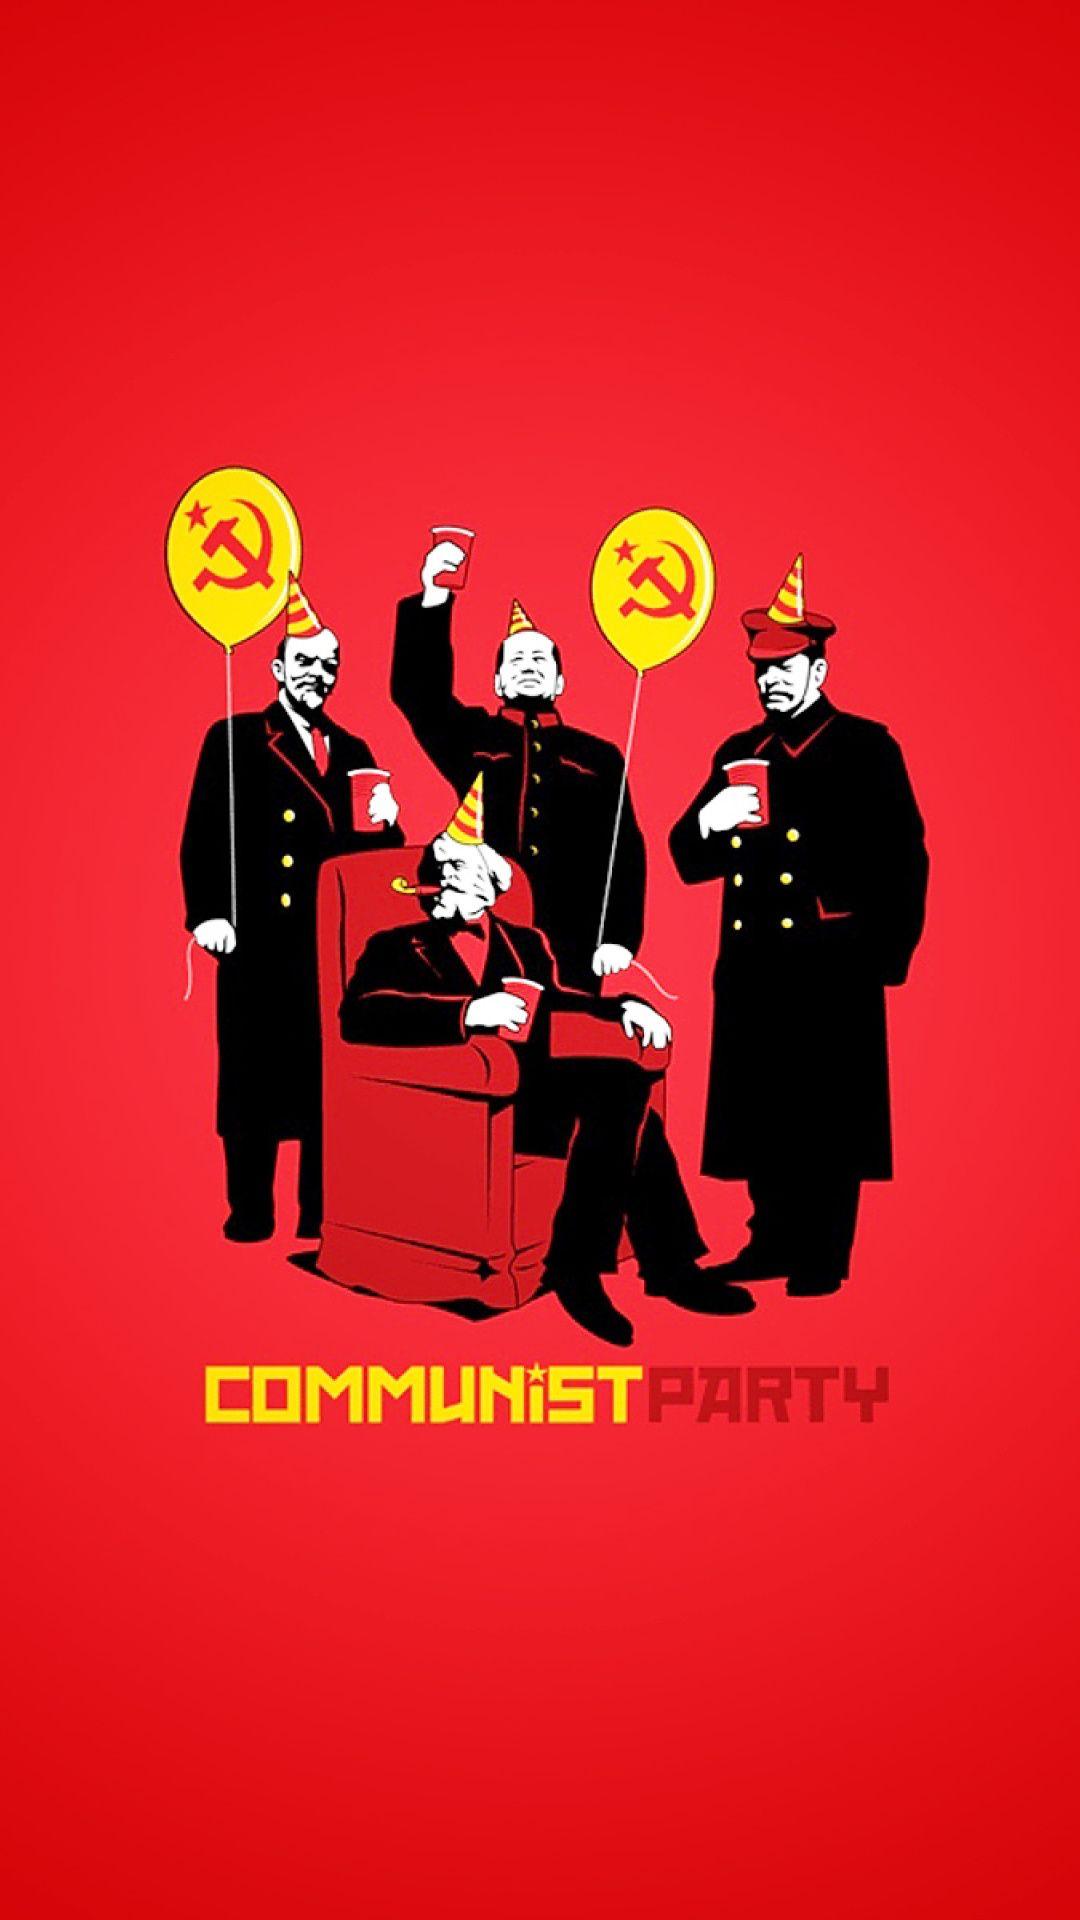 Communism lenin karl marx mao zedong iphone wallpaper. iPhone